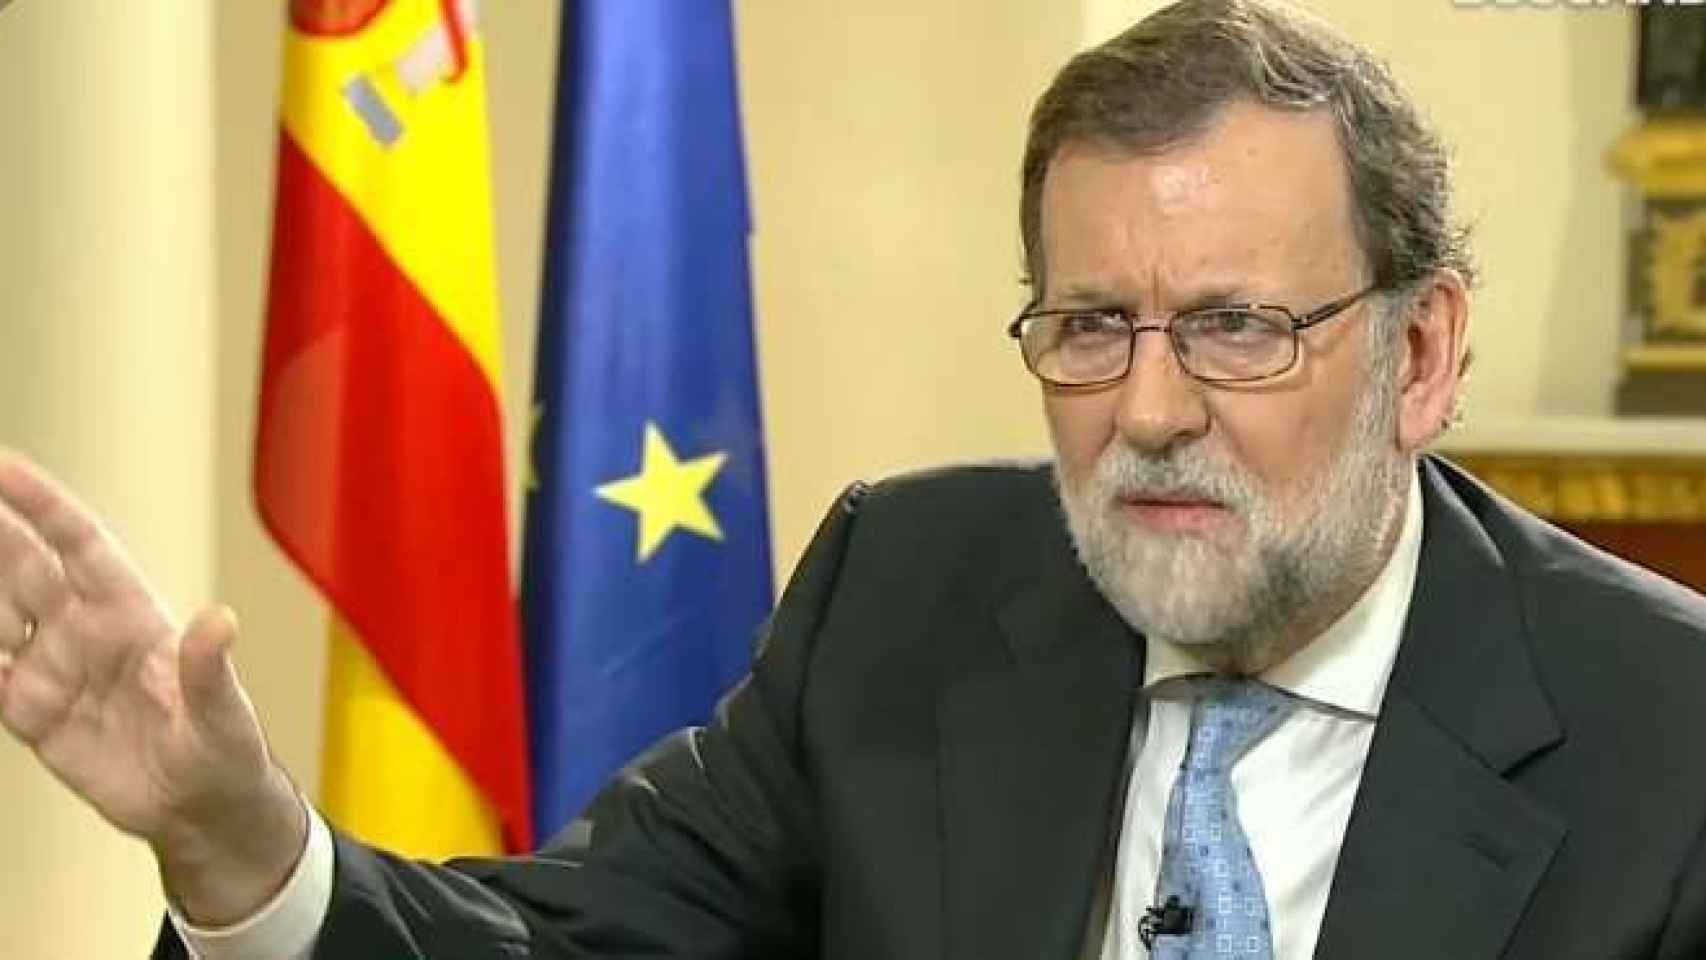 Susana Griso y Mariano Rajoy durante la entrevista.